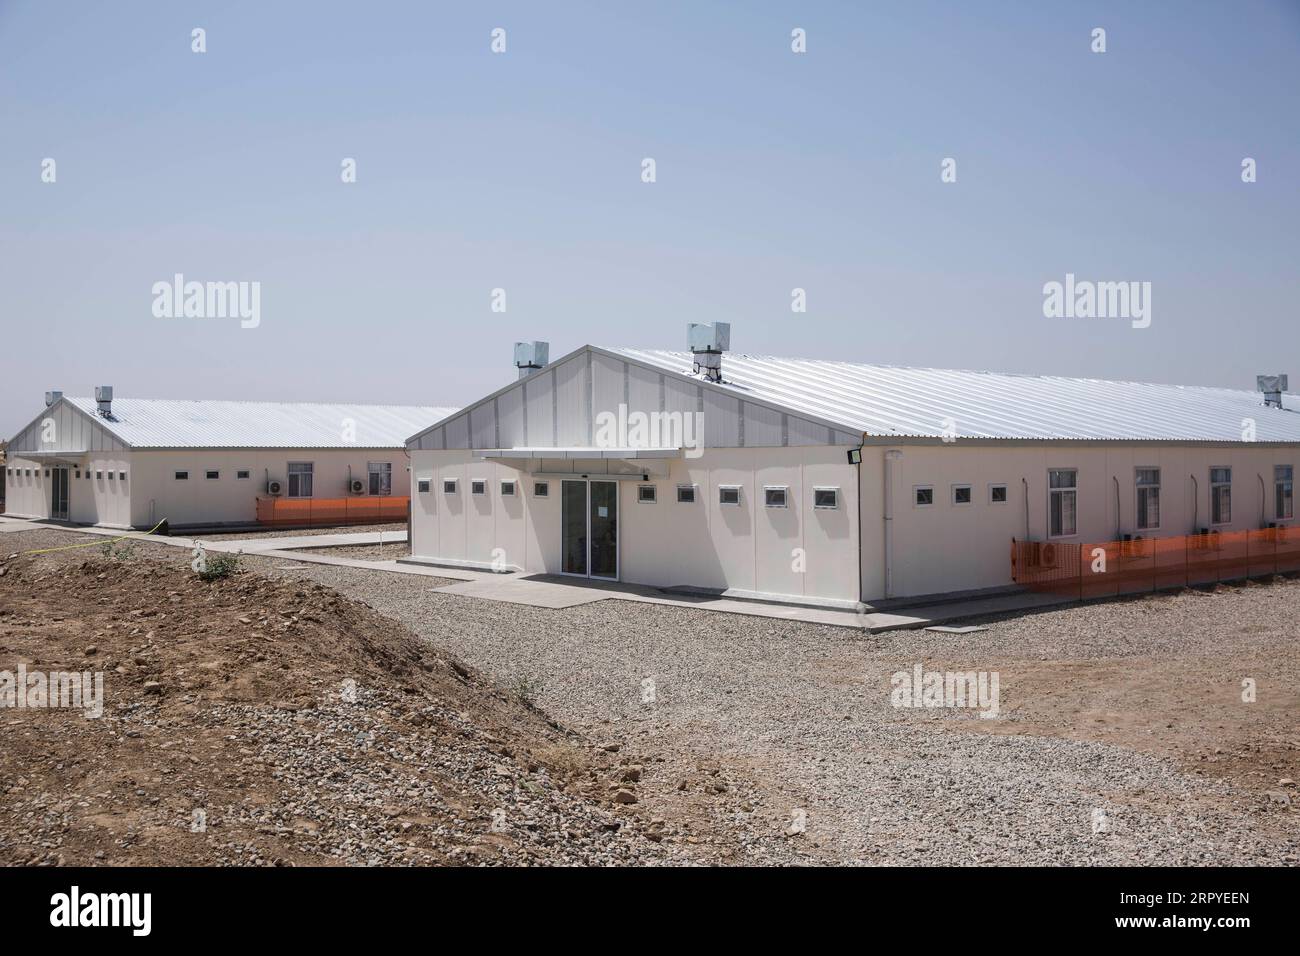 200627 -- HERAT, 27. Juni 2020 Xinhua -- Foto aufgenommen am 27. Juni 2020 zeigt ein Krankenhaus für COVID-19-Patienten in Herat, Afghanistan. Das afghanische Ministerium für öffentliche Gesundheit bestätigte am Samstag 165 neue COVID-19-Fälle, nachdem die Anzahl der Tests in den letzten Tagen aufgrund des Mangels an Testkits gesunken war, sagte das ministerium in einer Erklärung. Foto von Elaha Sahel/Xinhua AFGHANITSTAN-HERAT-COVID-19-HOSPITAL PUBLICATIONxNOTxINxCHN Stockfoto